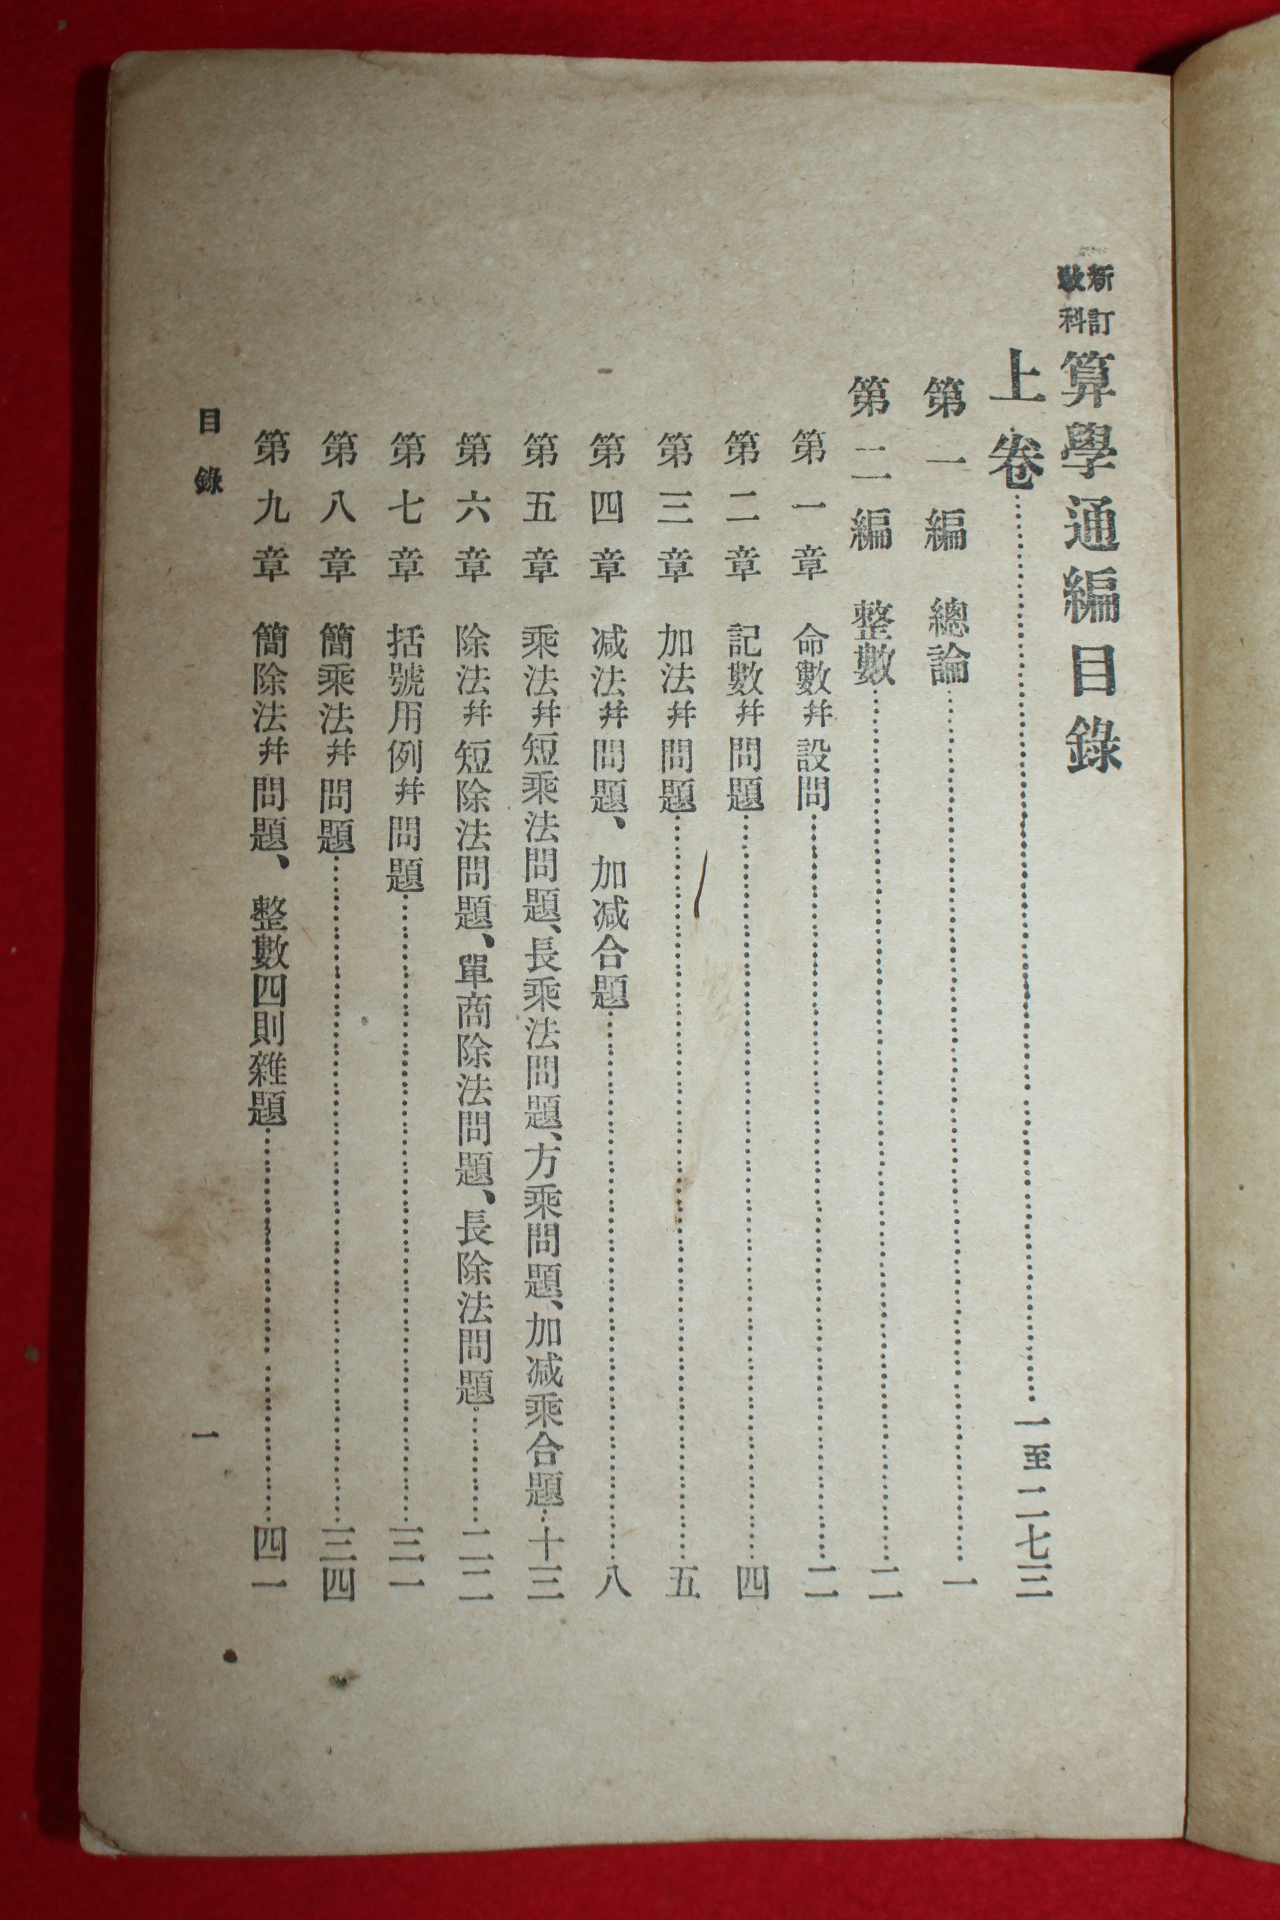 1908년(隆熙 2年) 산학통편(算學通編)1책완질